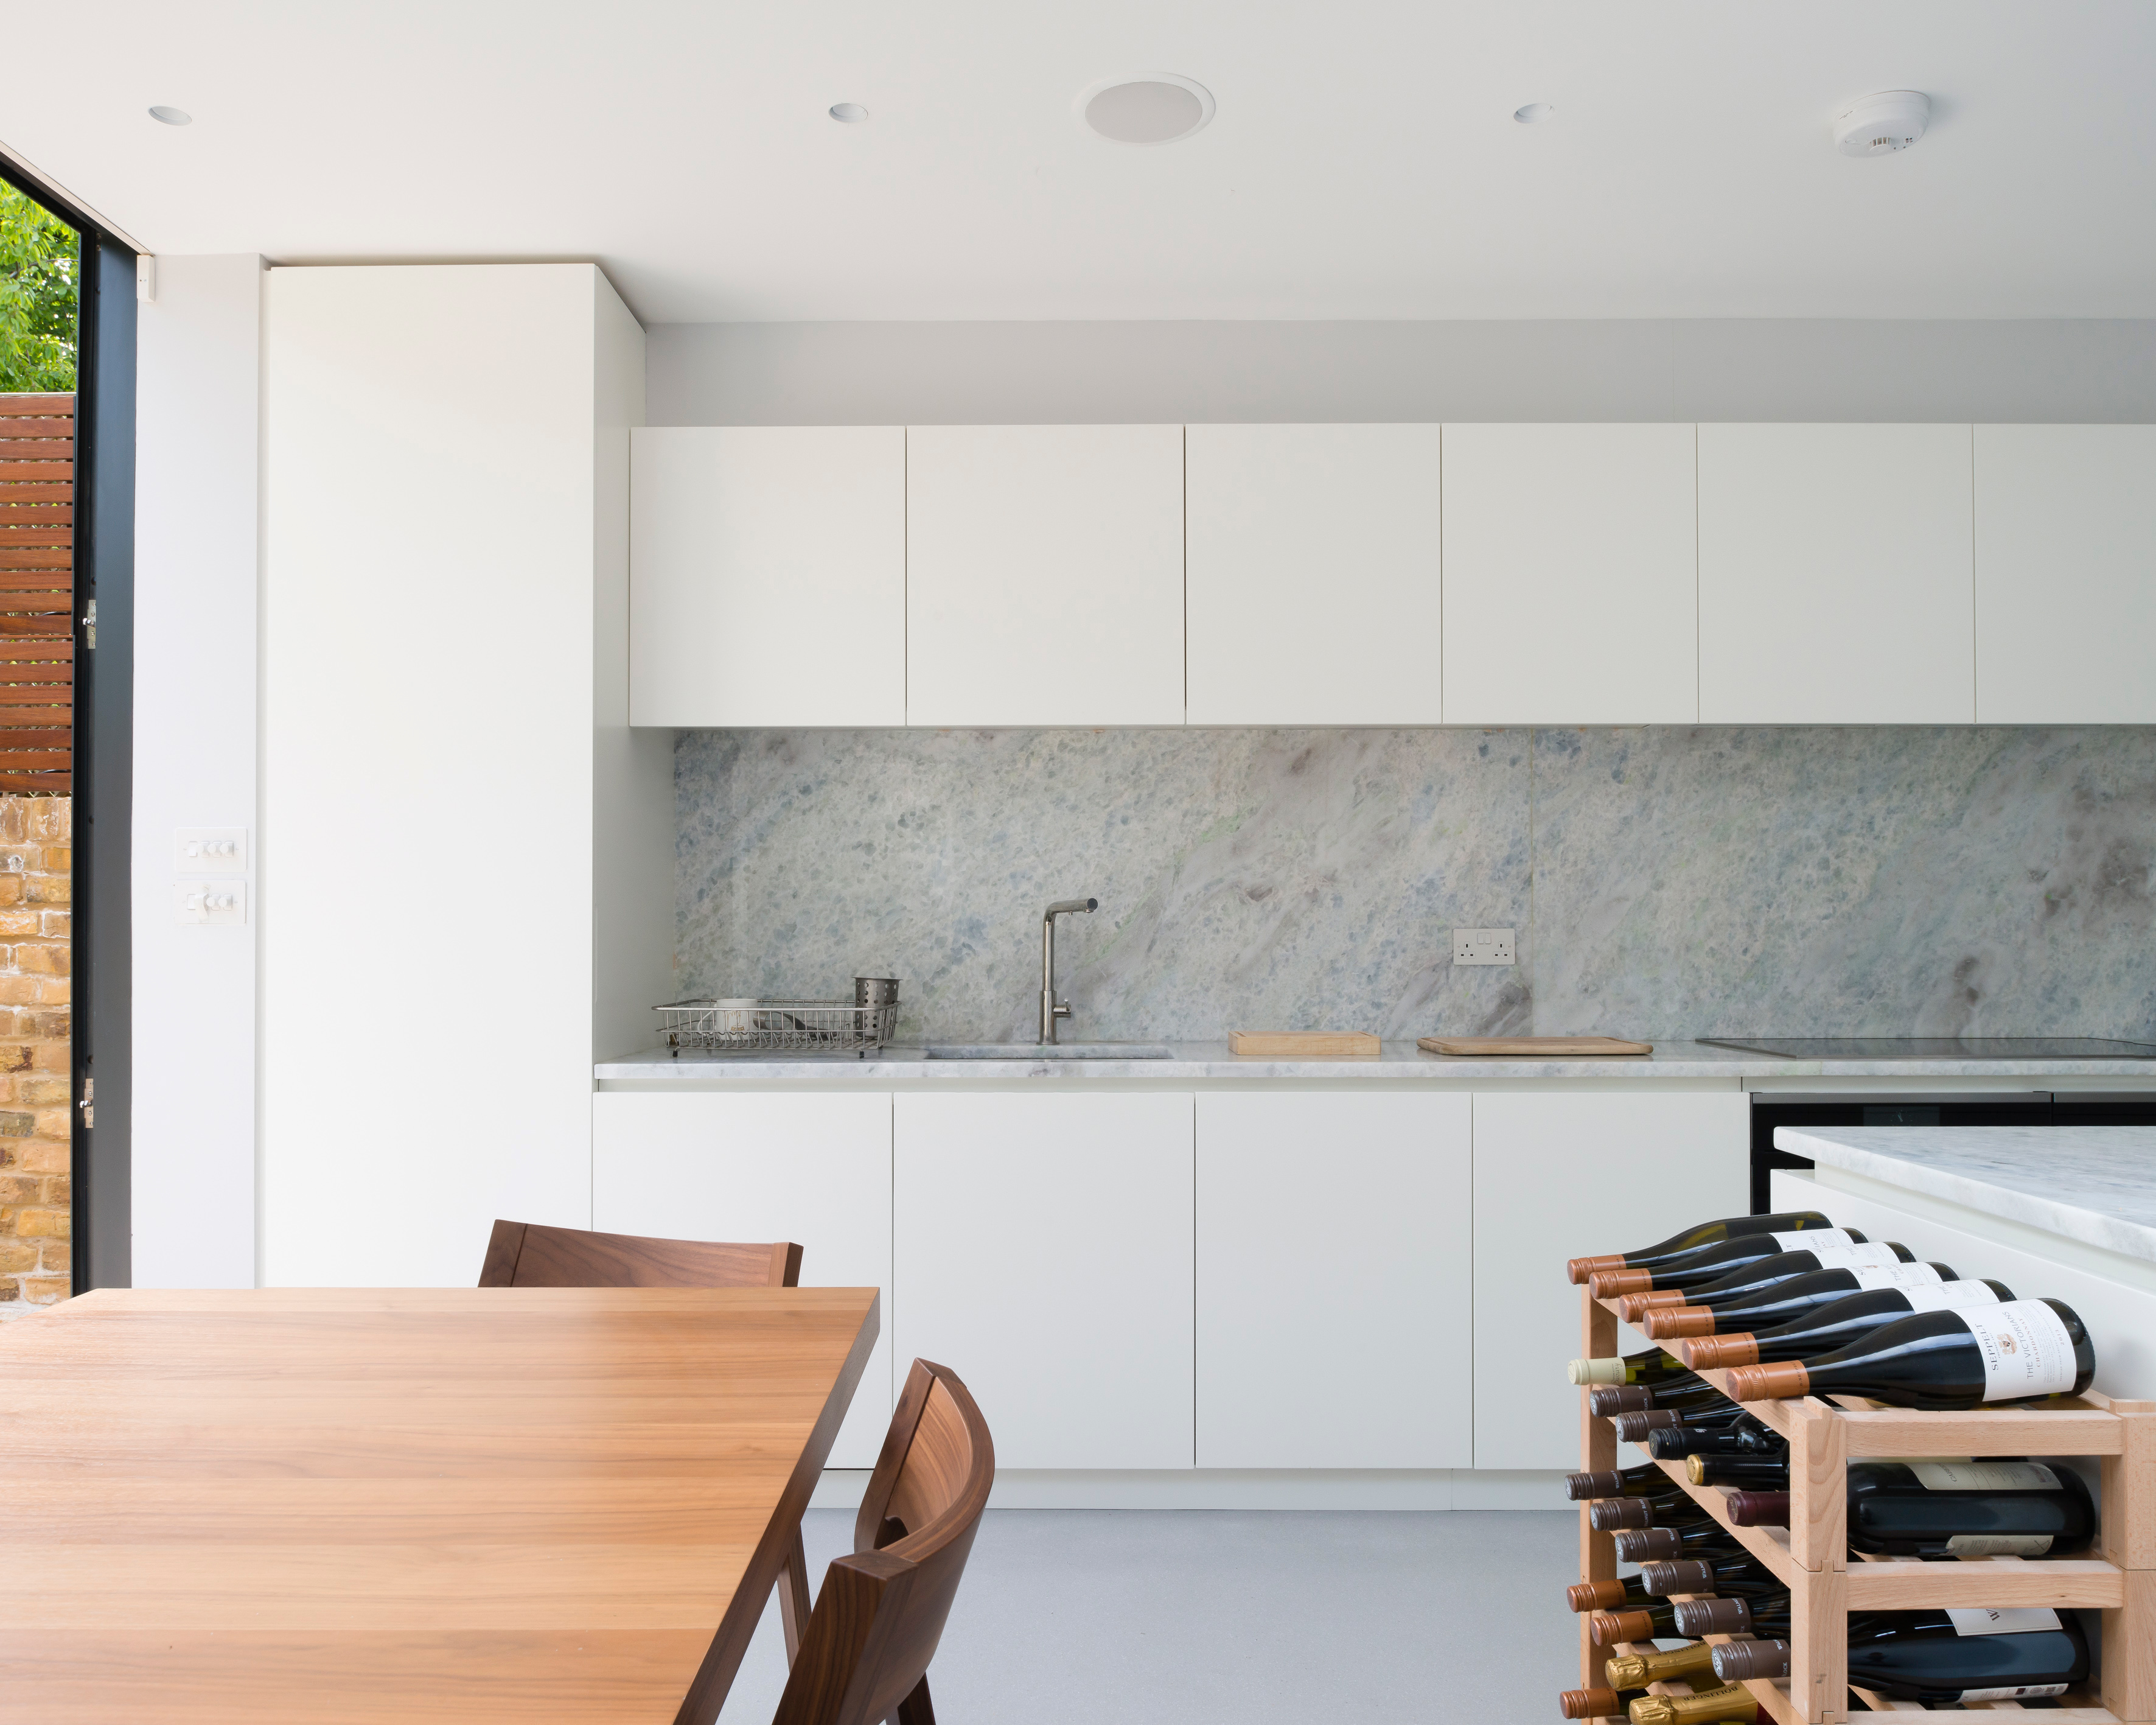 Pebble terrazzo resin floor in kitchen 